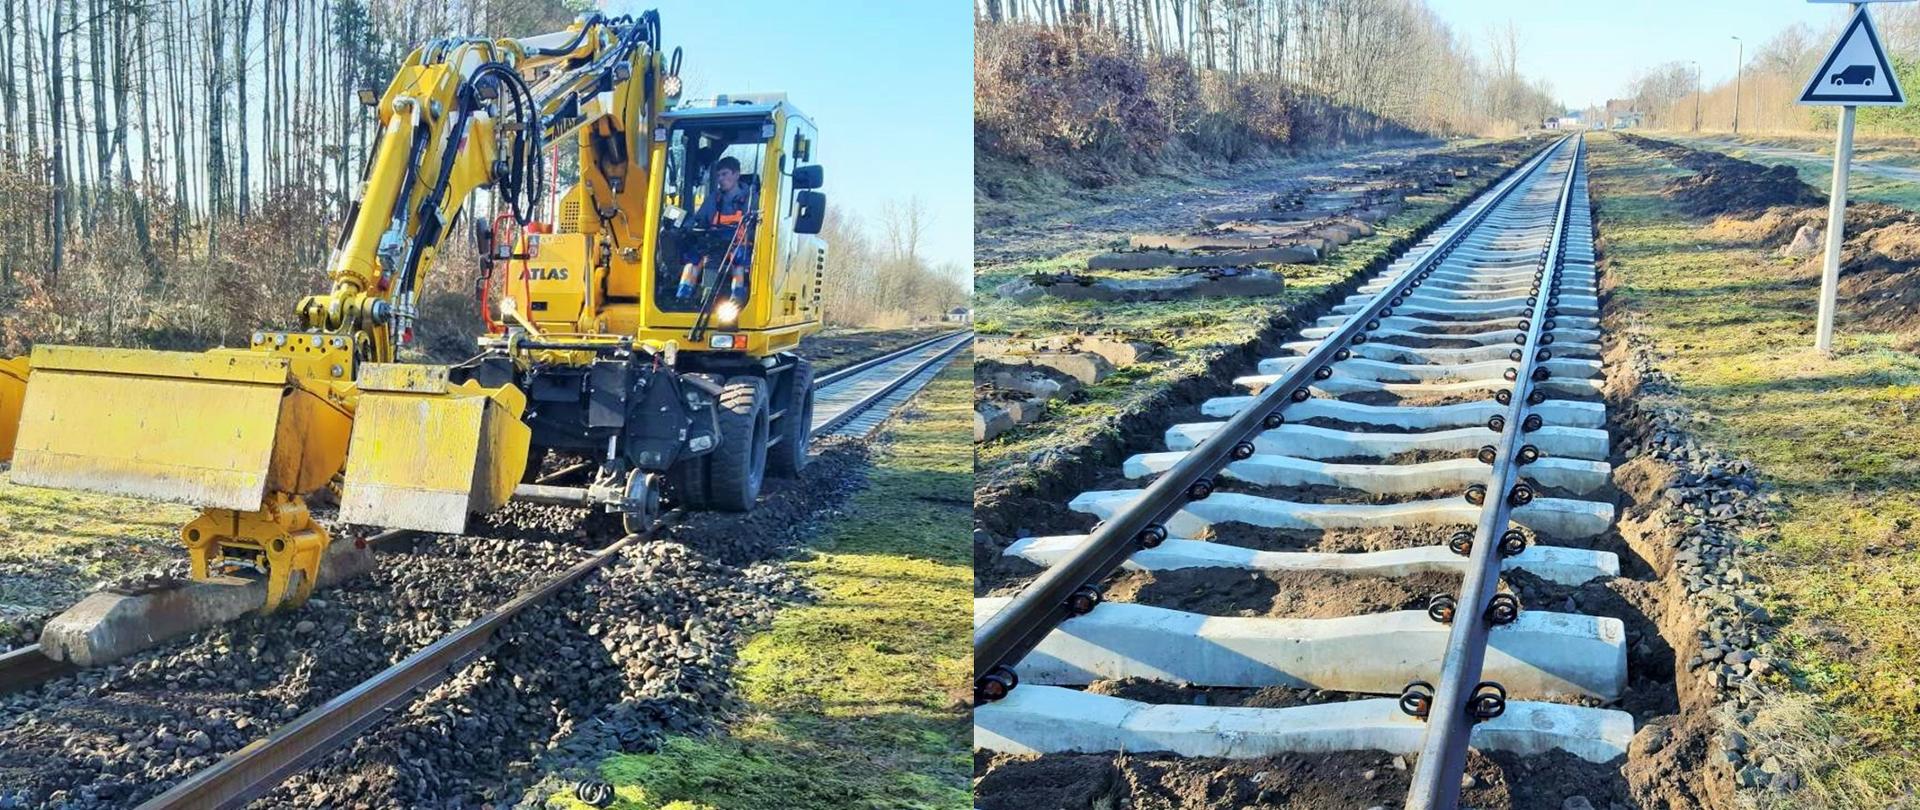 Trwa przebudowa linii kolejowej na odcinkach Chojnice – Powałki oraz Raduń – Lipusz